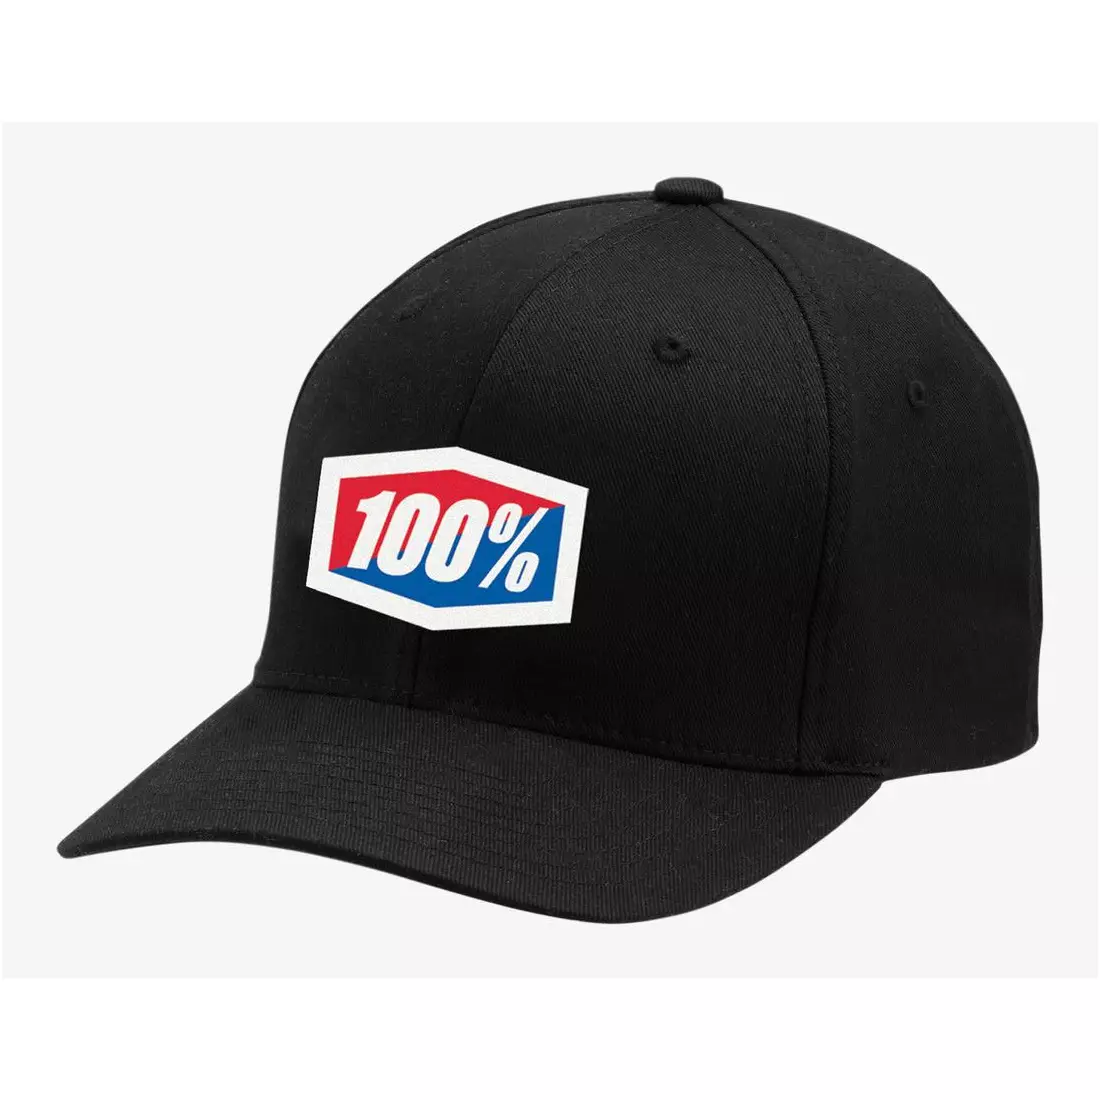 100% baseballová čepice official x-Fit  flexfit hat black STO-20037-001-17